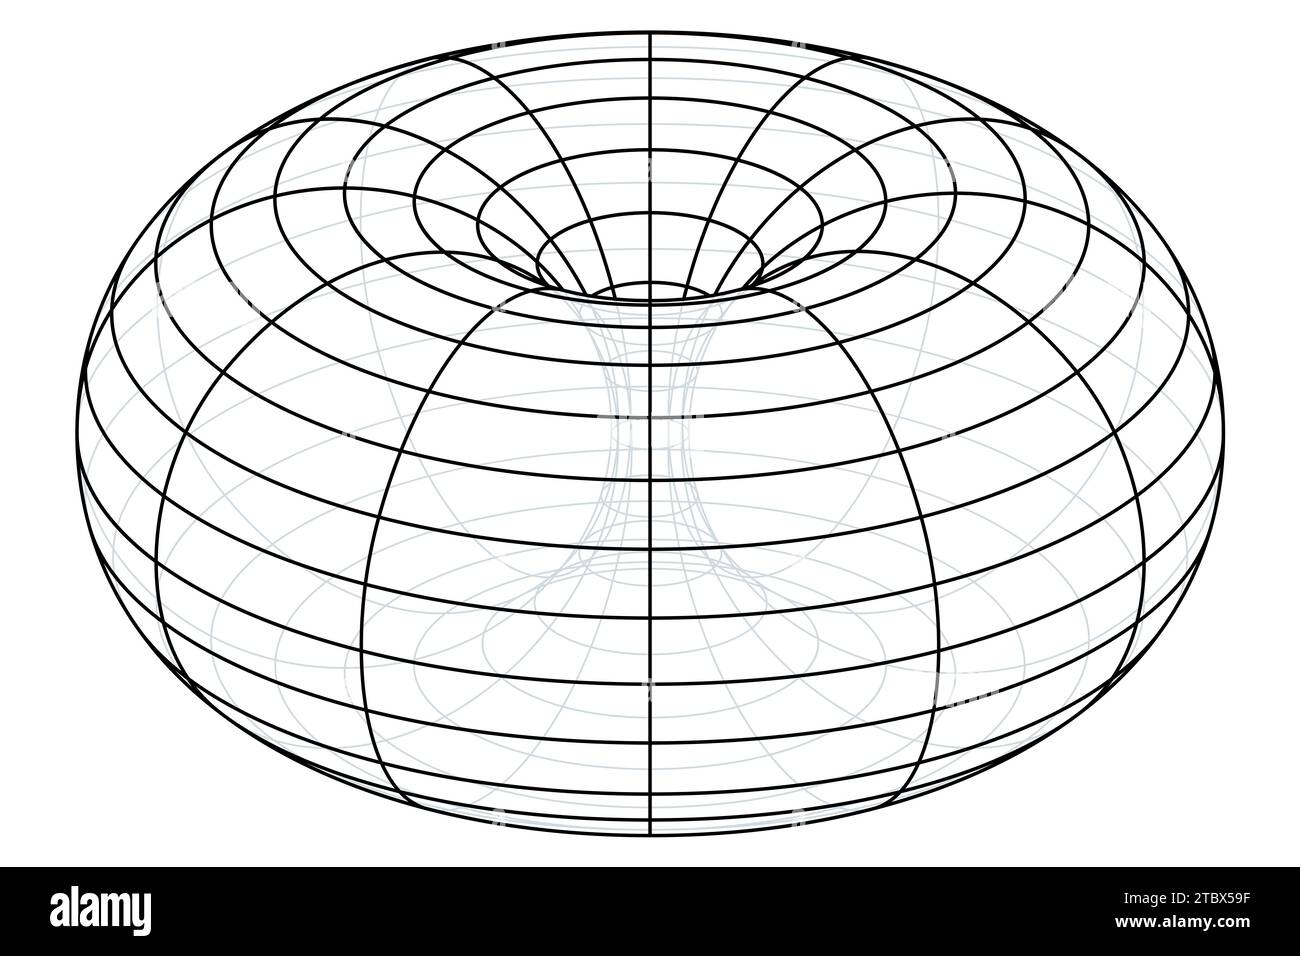 Drahtrahmen eines Ringtorus, auch Donut oder Donut. Geometrische Rotationsfläche, die durch Drehen eines Kreises im 3D-Raum um eine volle Umdrehung erzeugt wird. Stockfoto